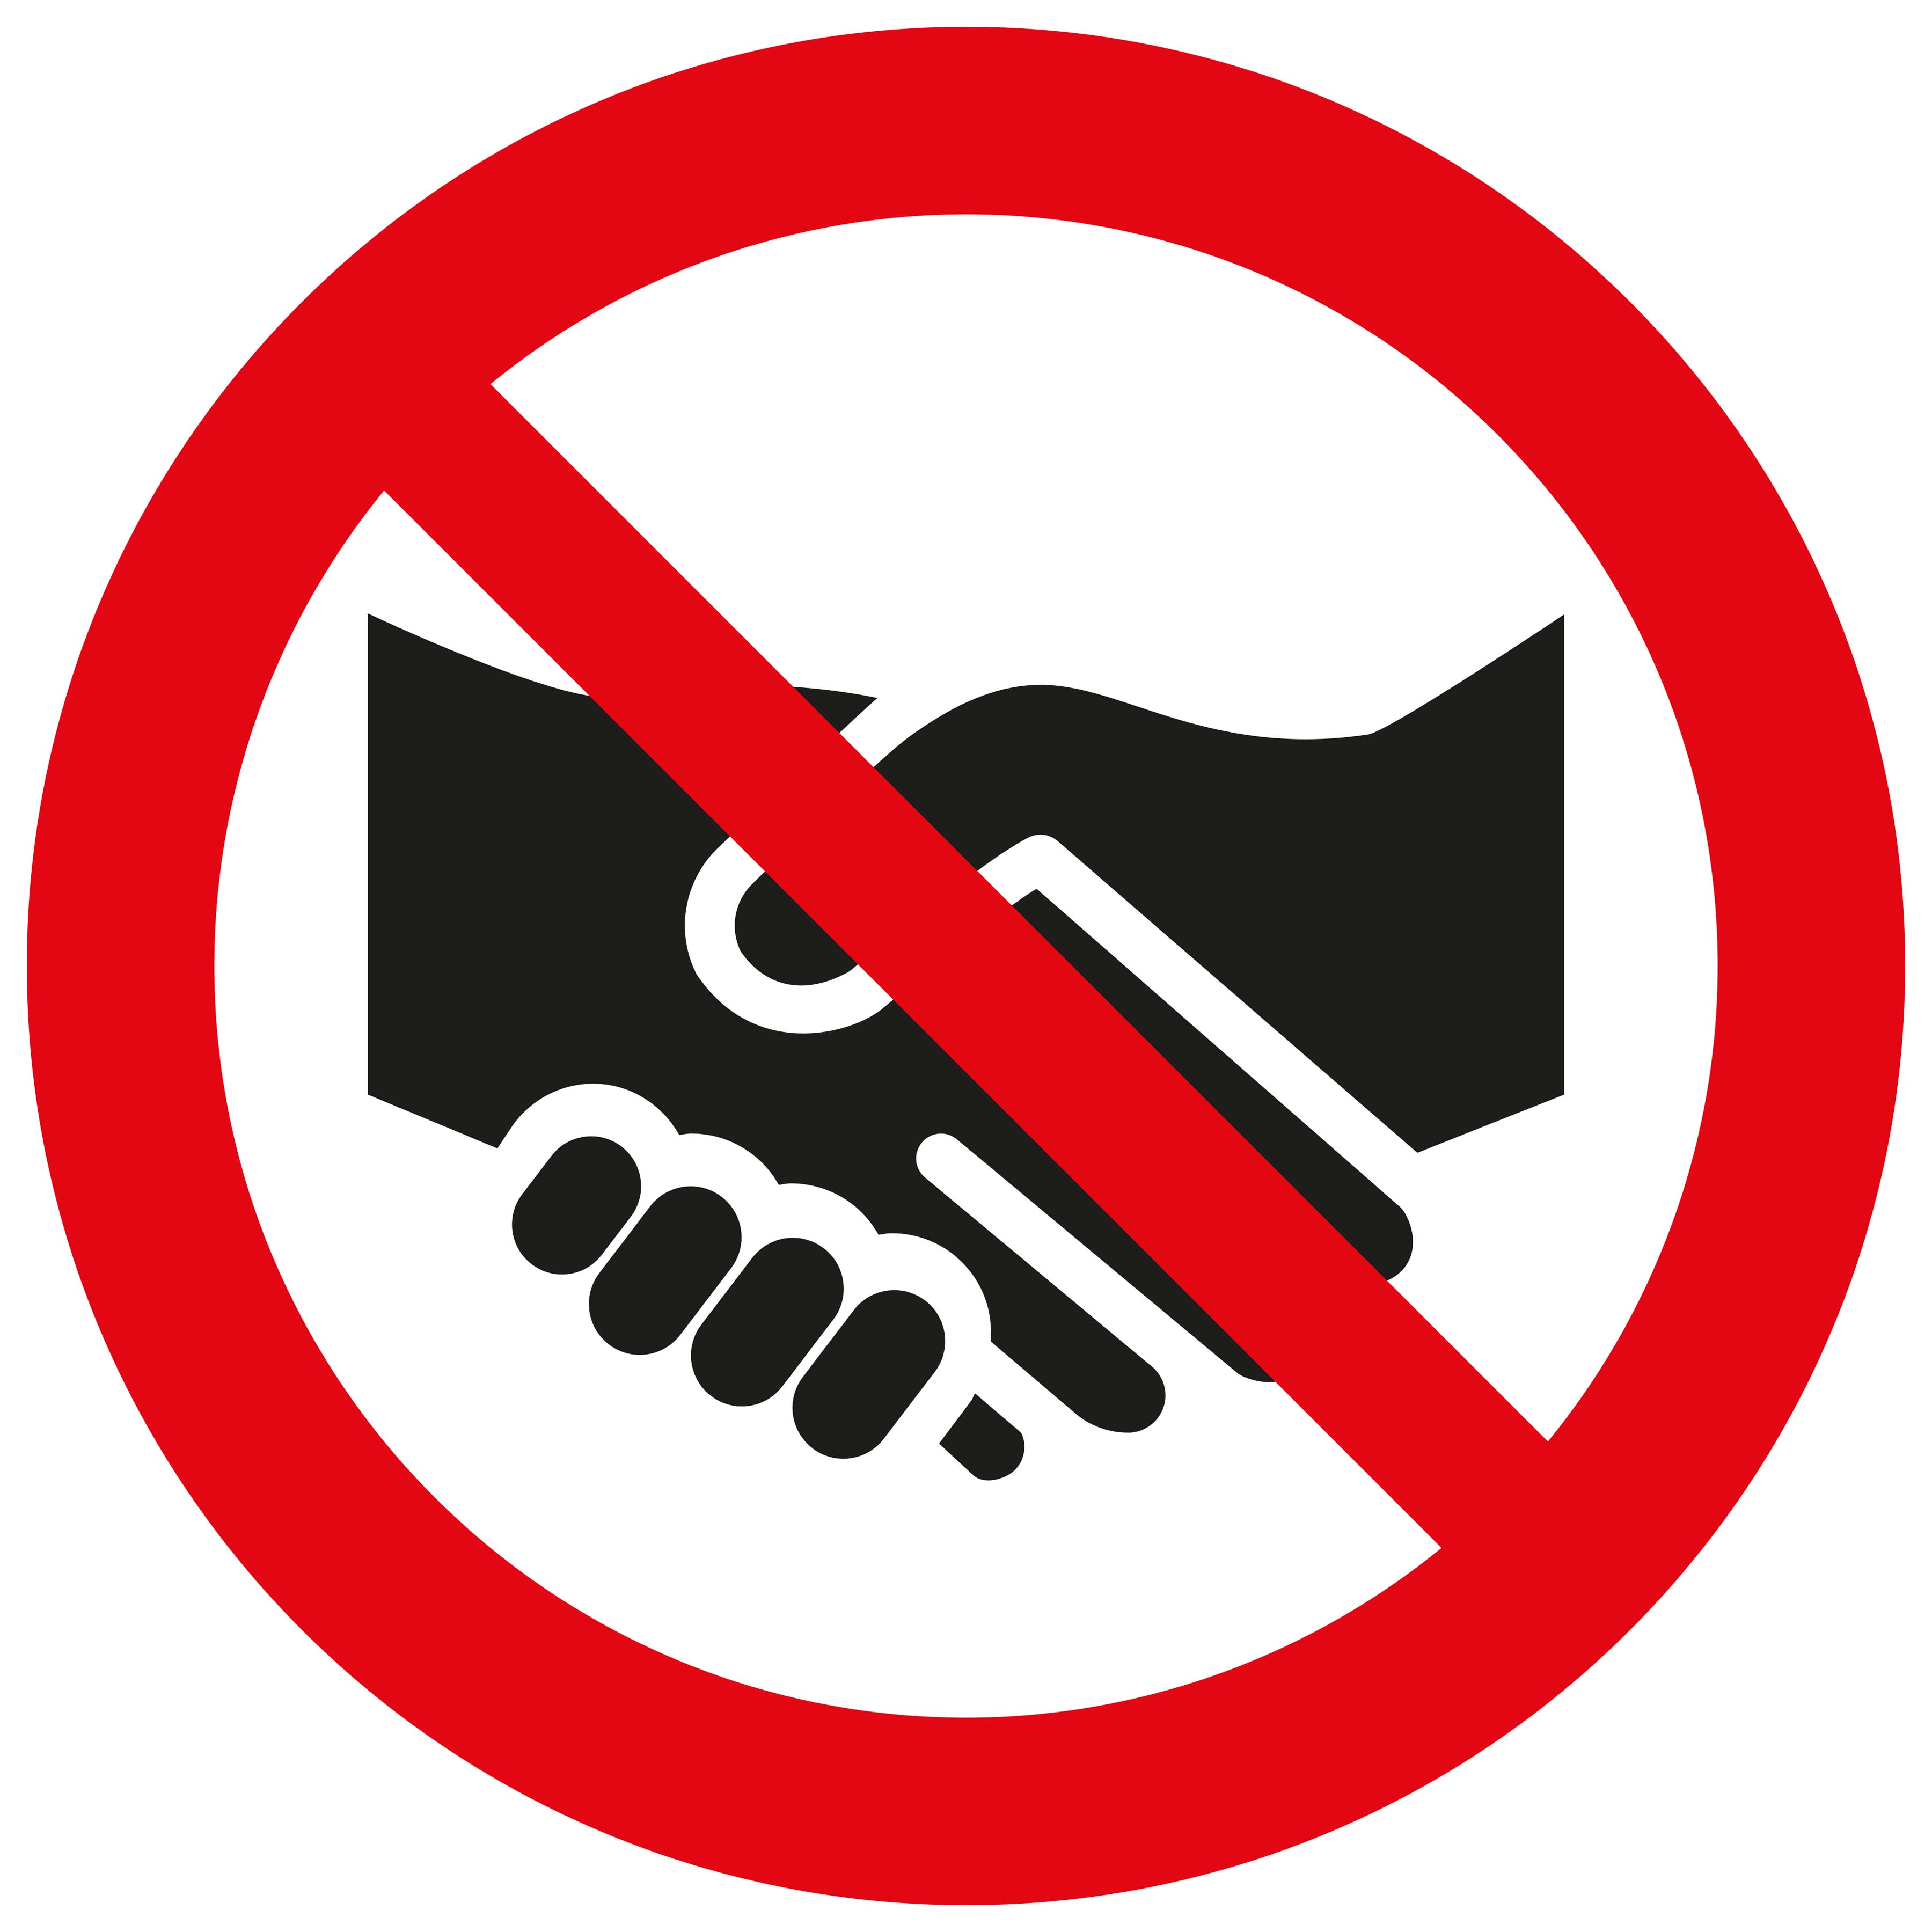 Pickup bord Wij geven u geen hand - We do not shake hands with you - Nous ne te serrons pas la main - Wir geben Ihnen nicht die Hand - social distance  